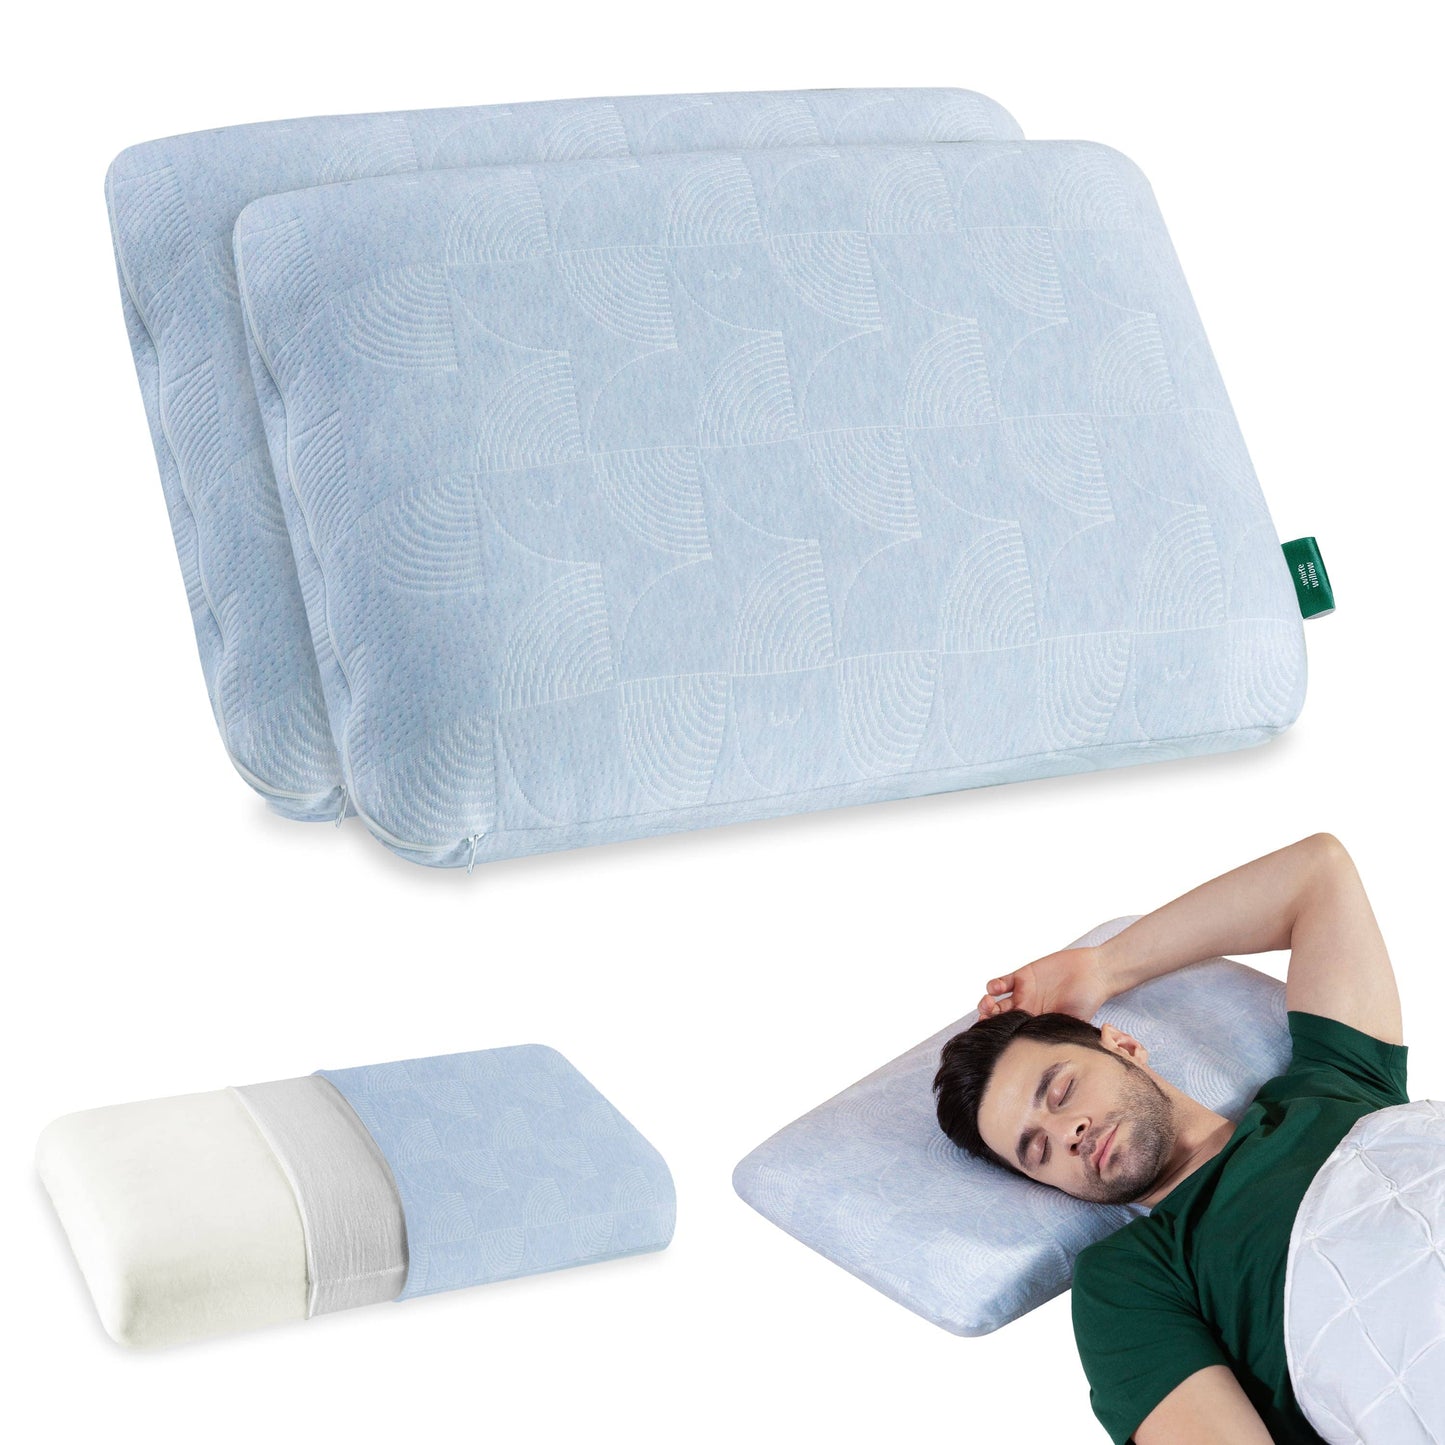 Cypress - Memory Foam Pillow - Regular - Medium Firm Regular Pillow The White Willow Medium 4"H Standard 22x14 Pack of 2 Green